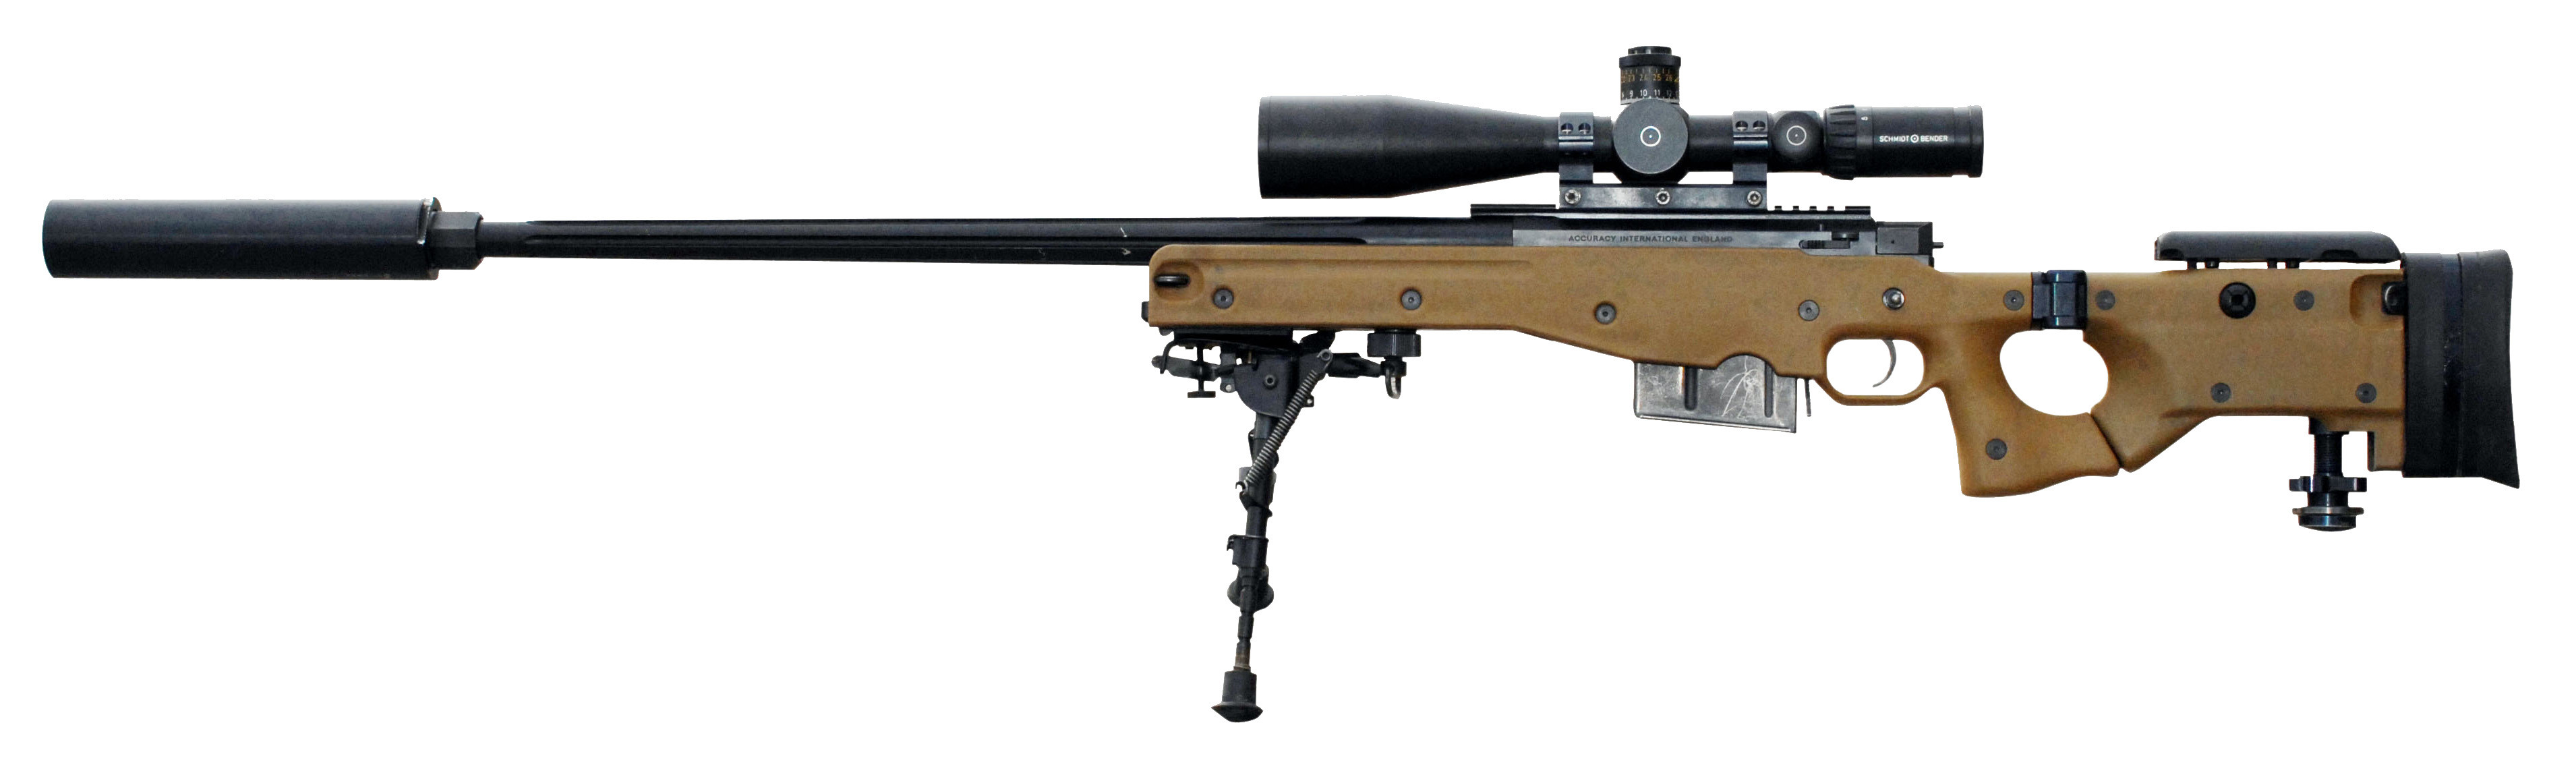 3820x1158 Sniper Rifle